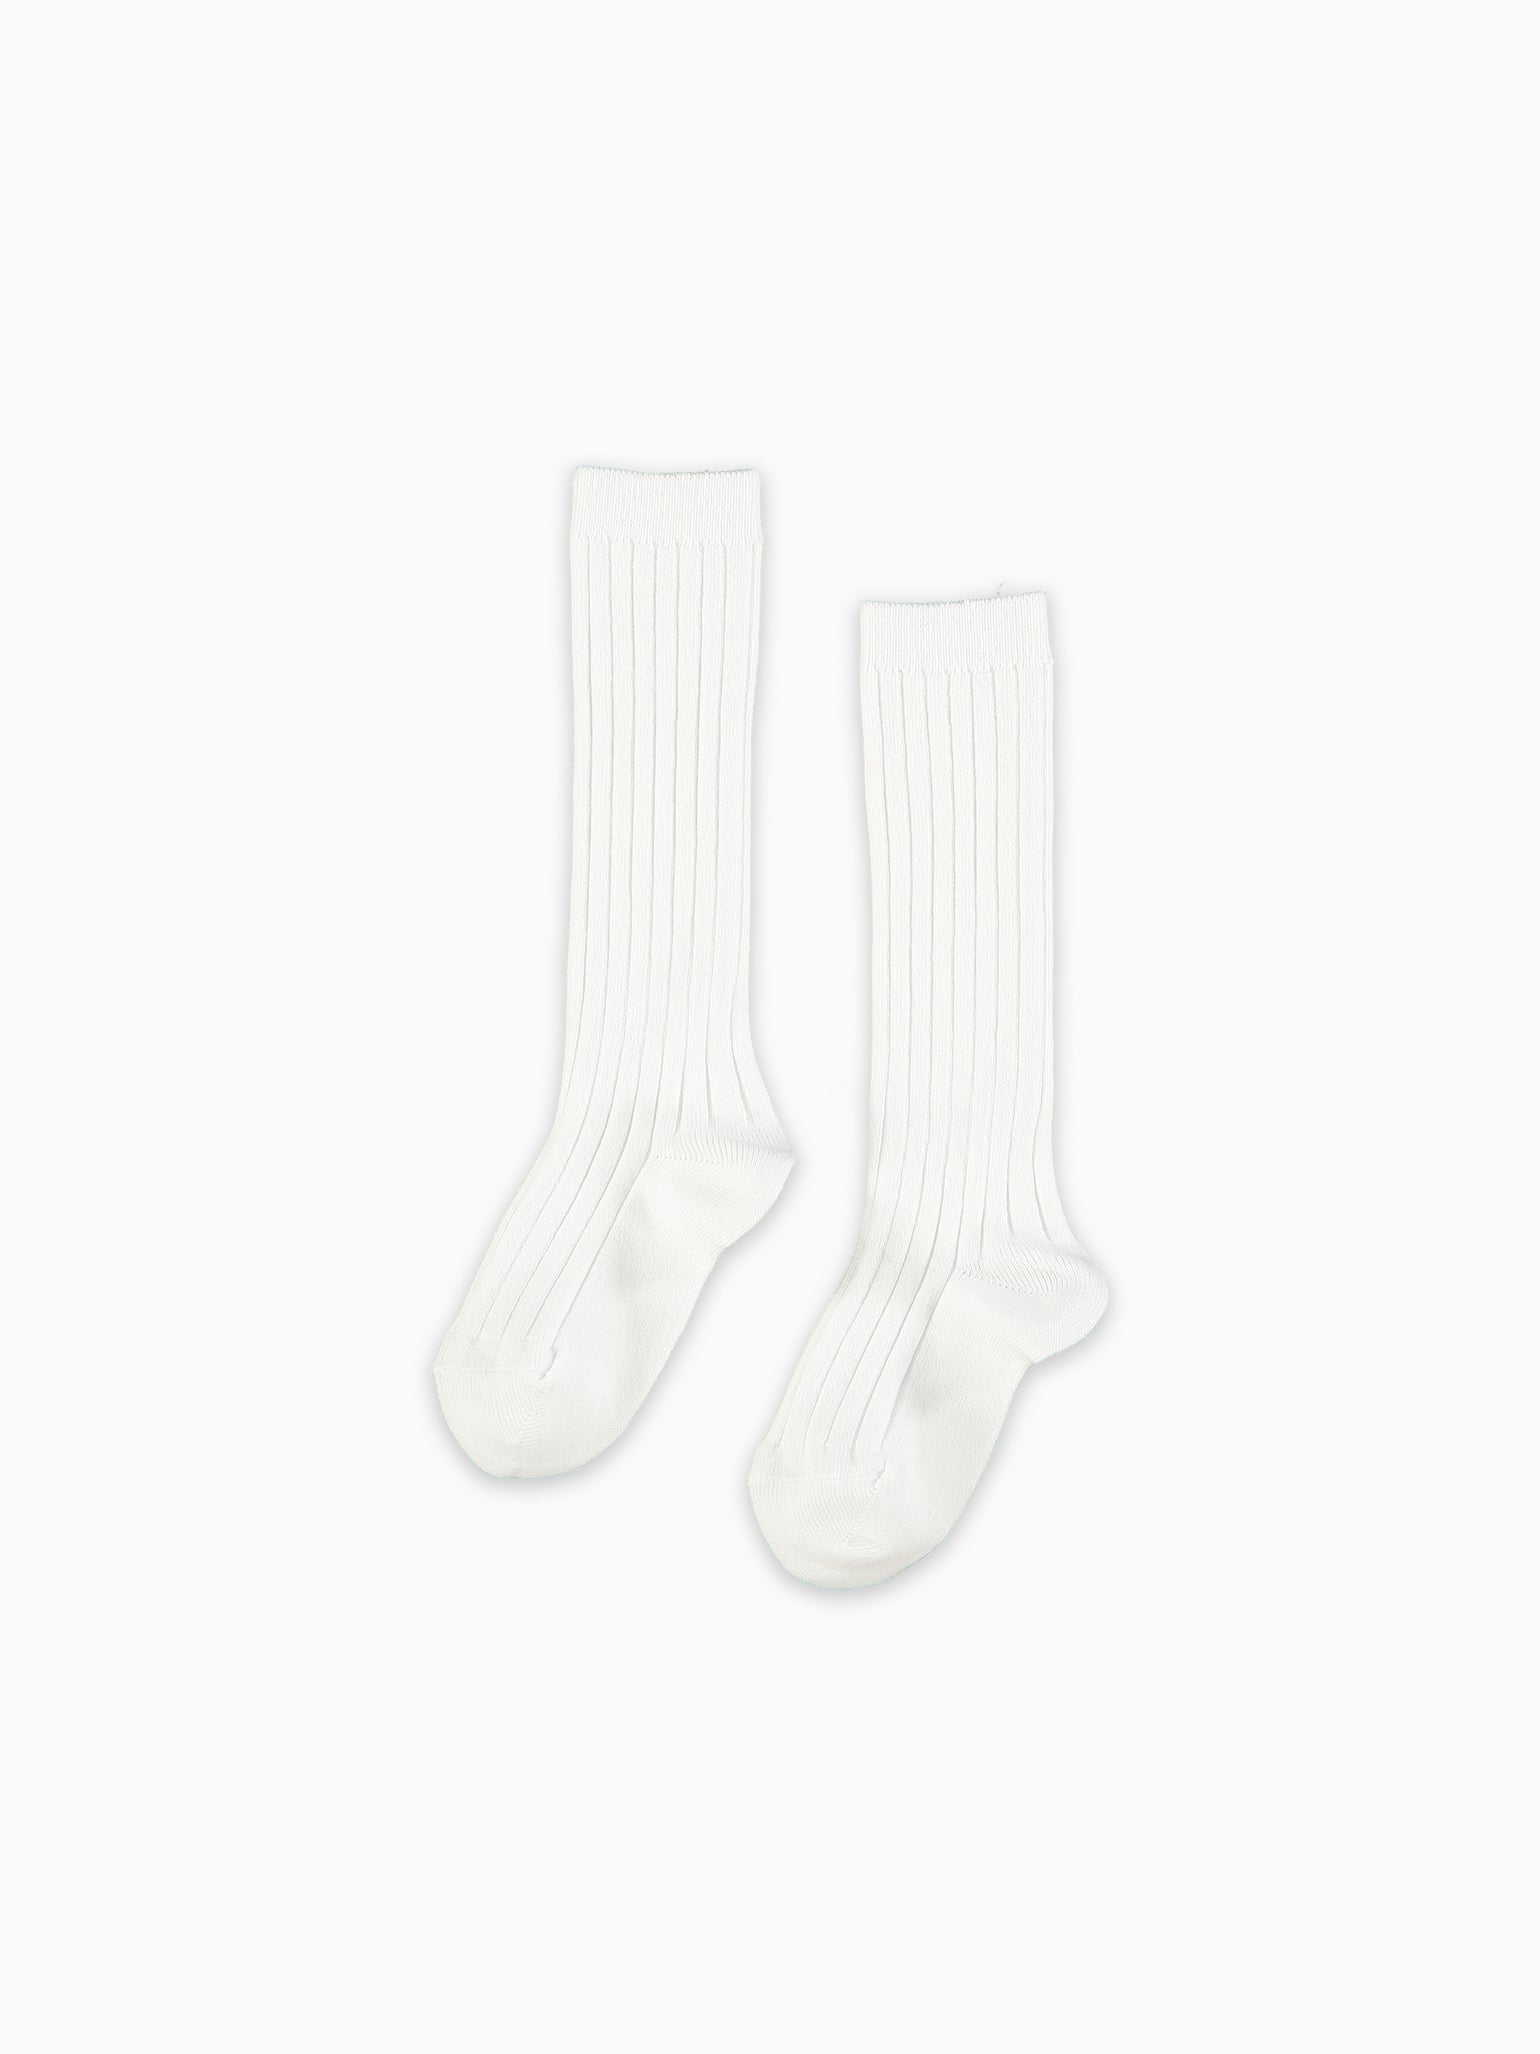 White Ribbed Knee High Kids Socks Set